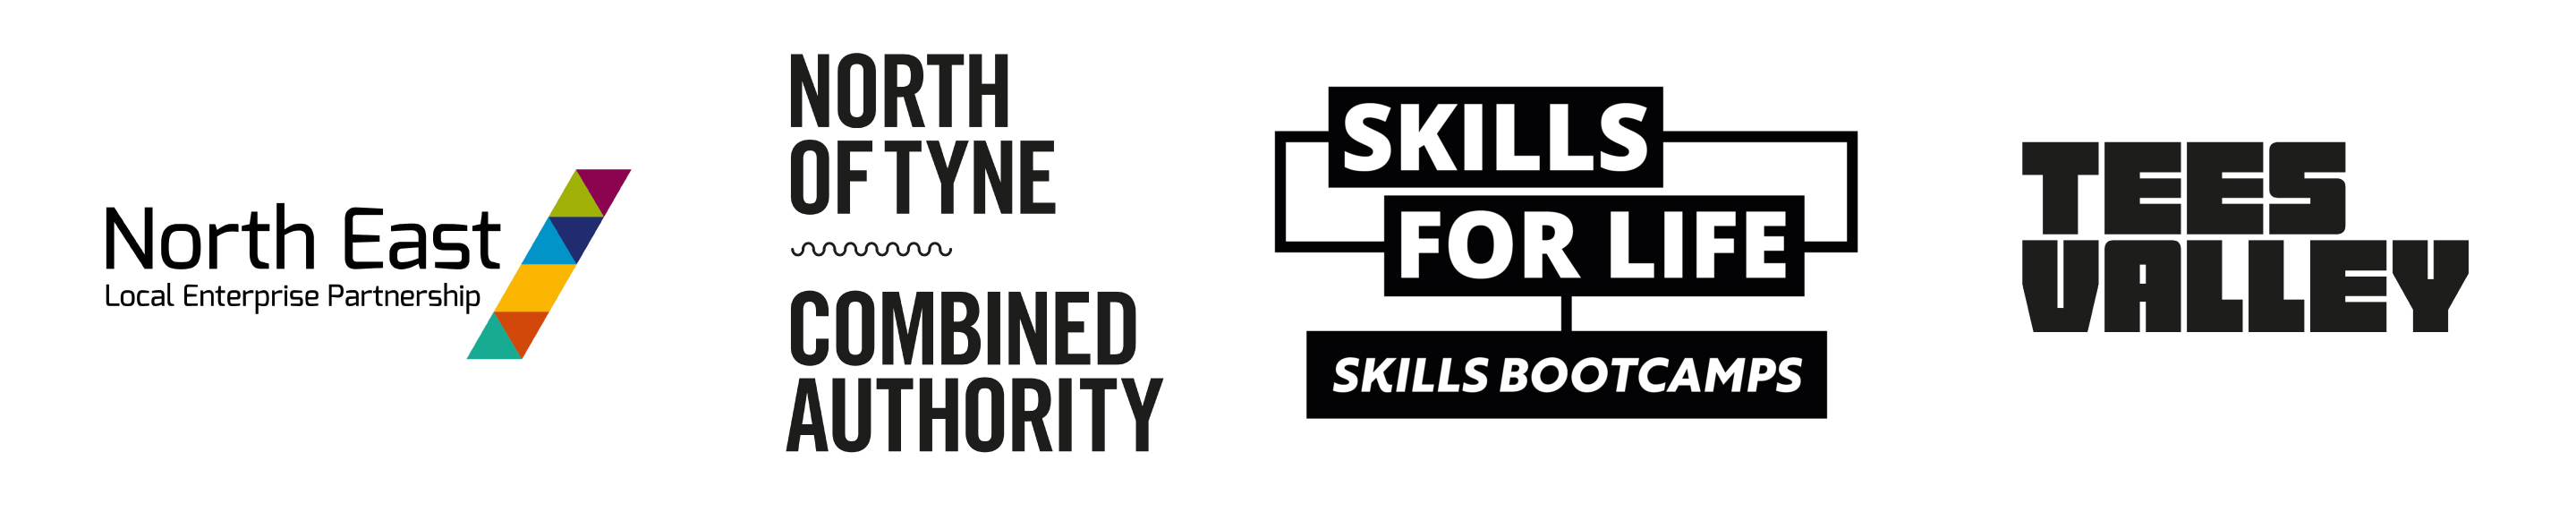 Skills bootcamps Logos